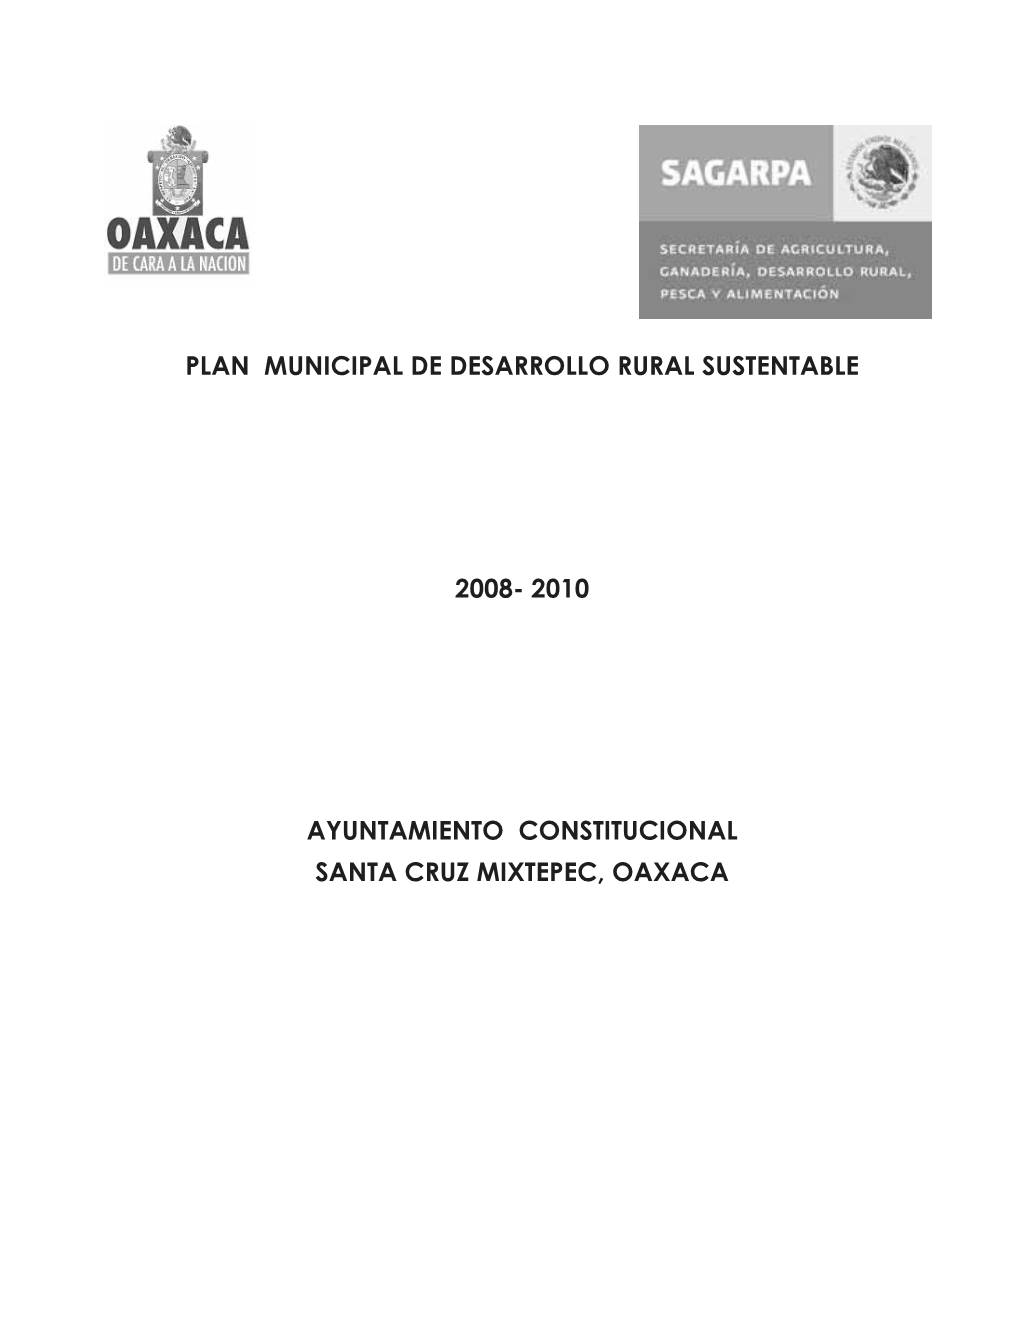 2010 Ayuntamiento Constitucional Santa Cruz